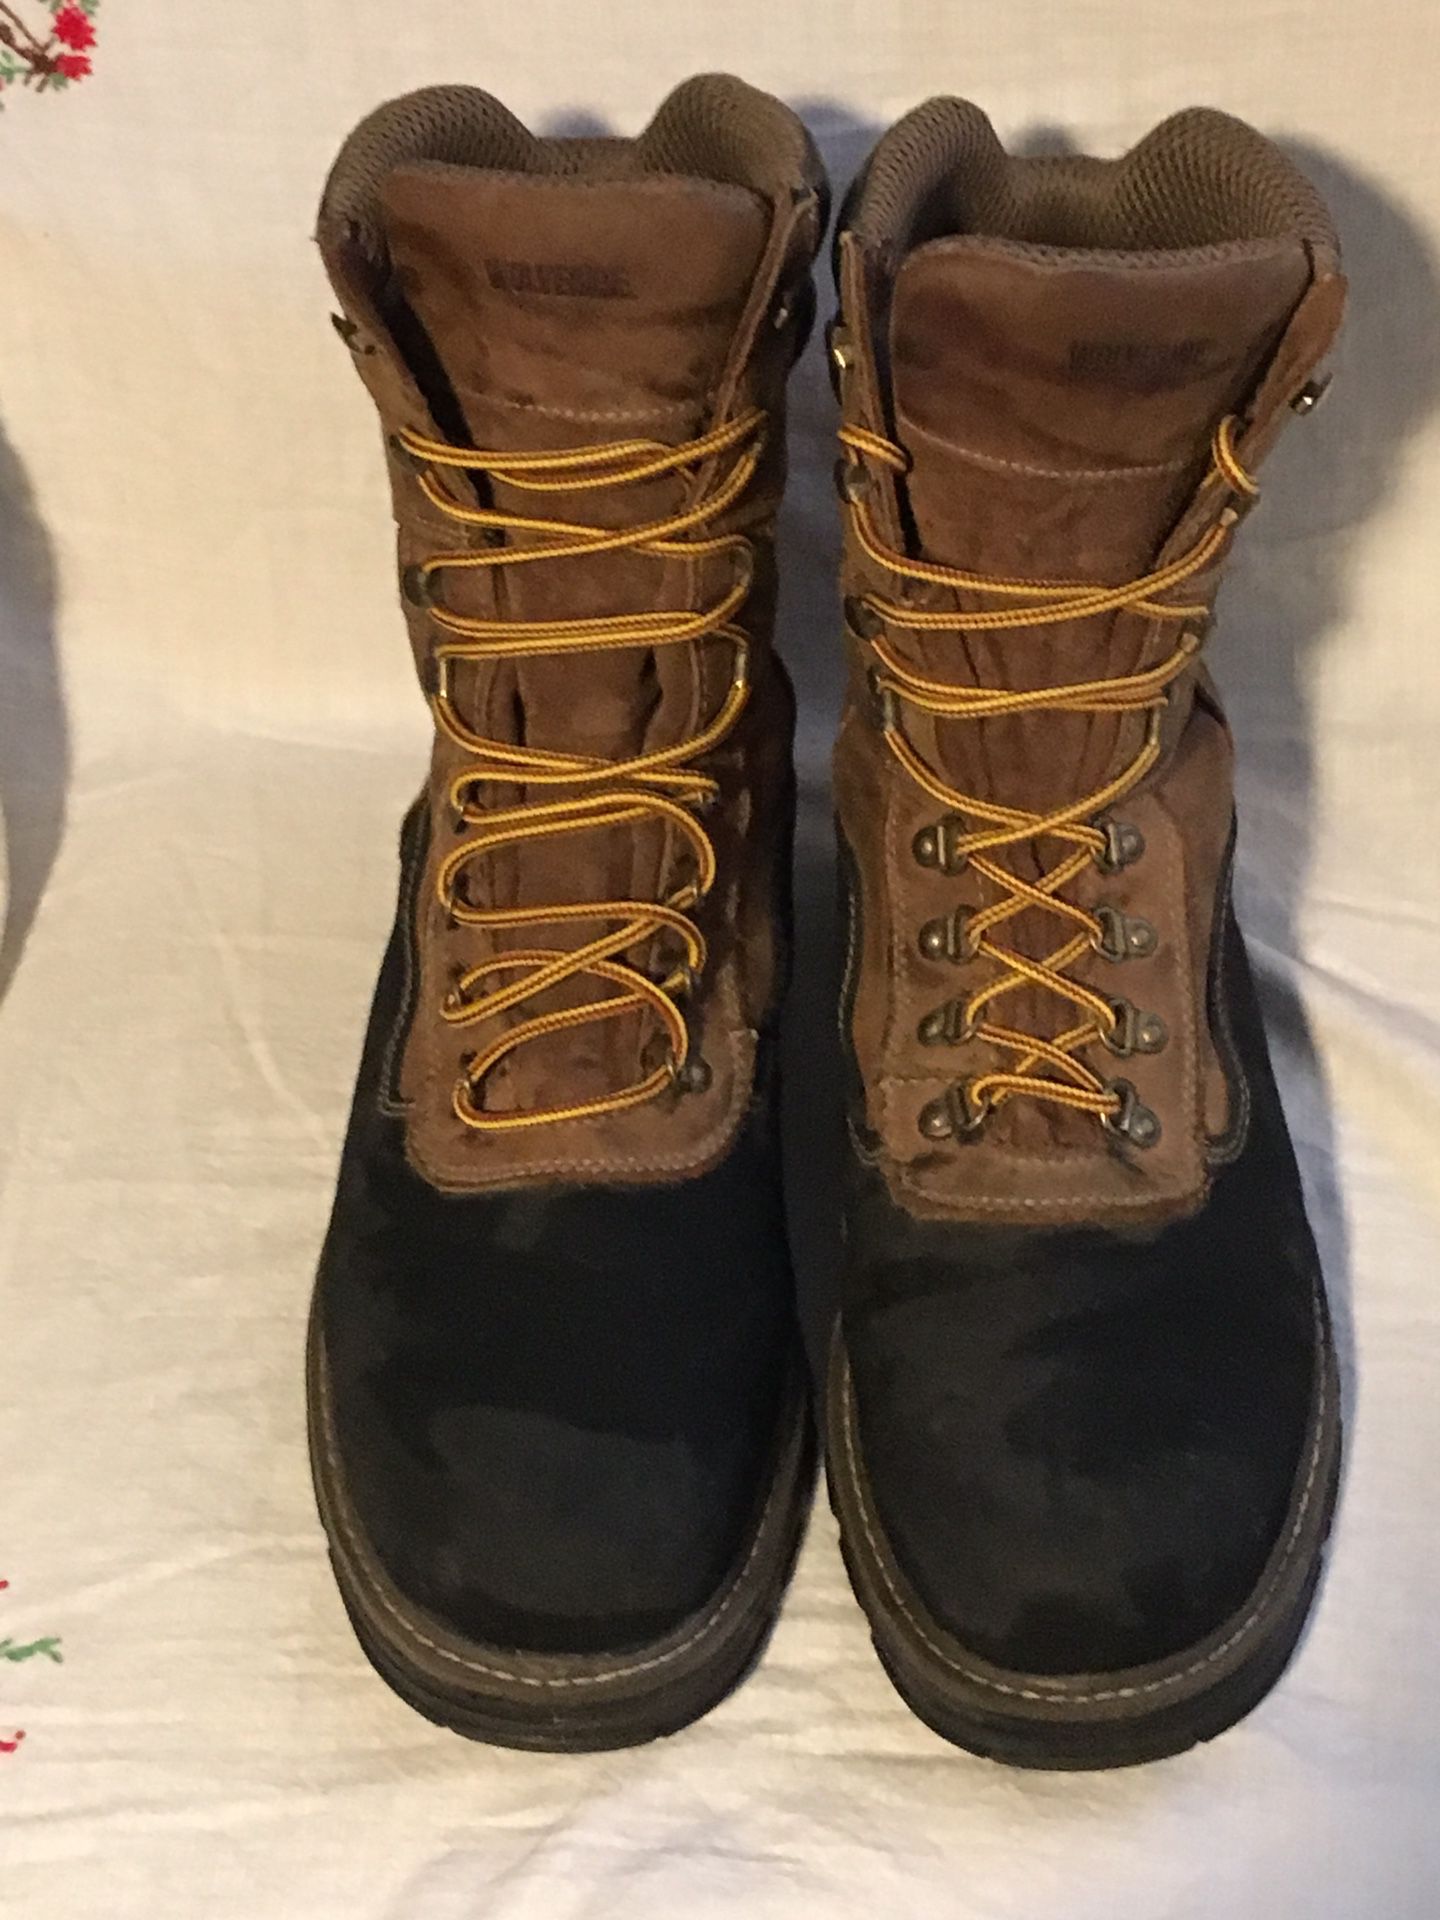 Wolverine work boots size 12ew